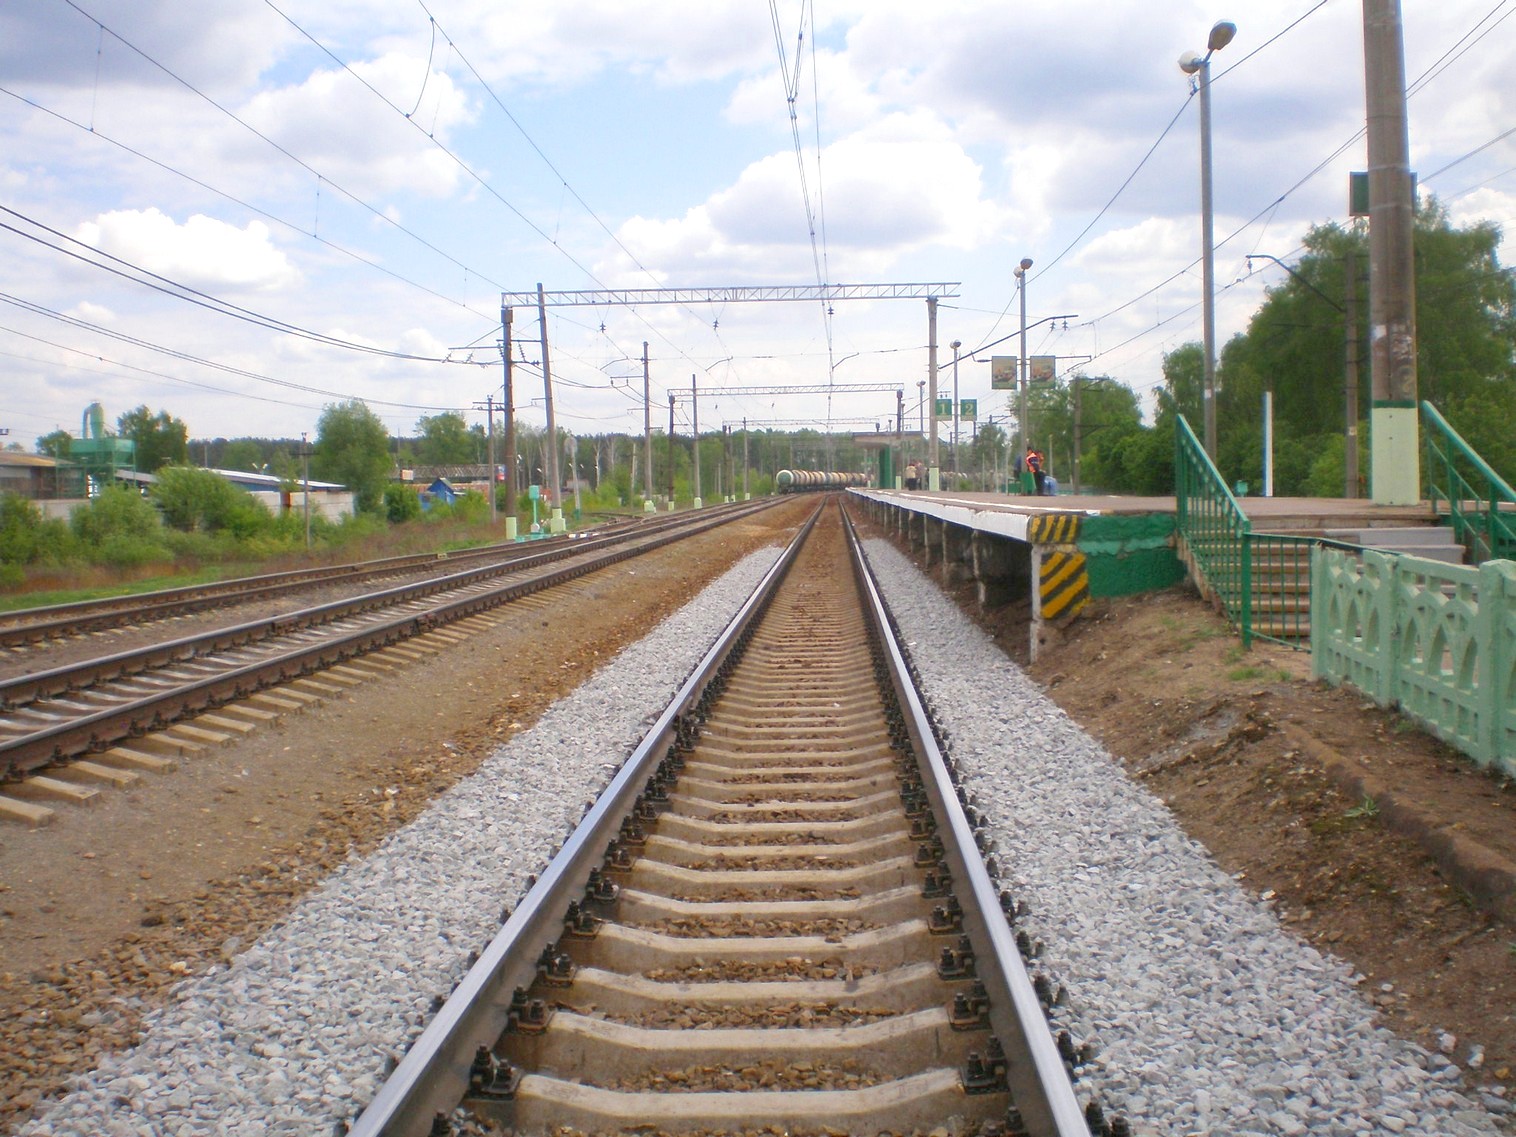 Люберцы-Арзамасская   железнодорожная линия на территории Московской области  — станция Овражки